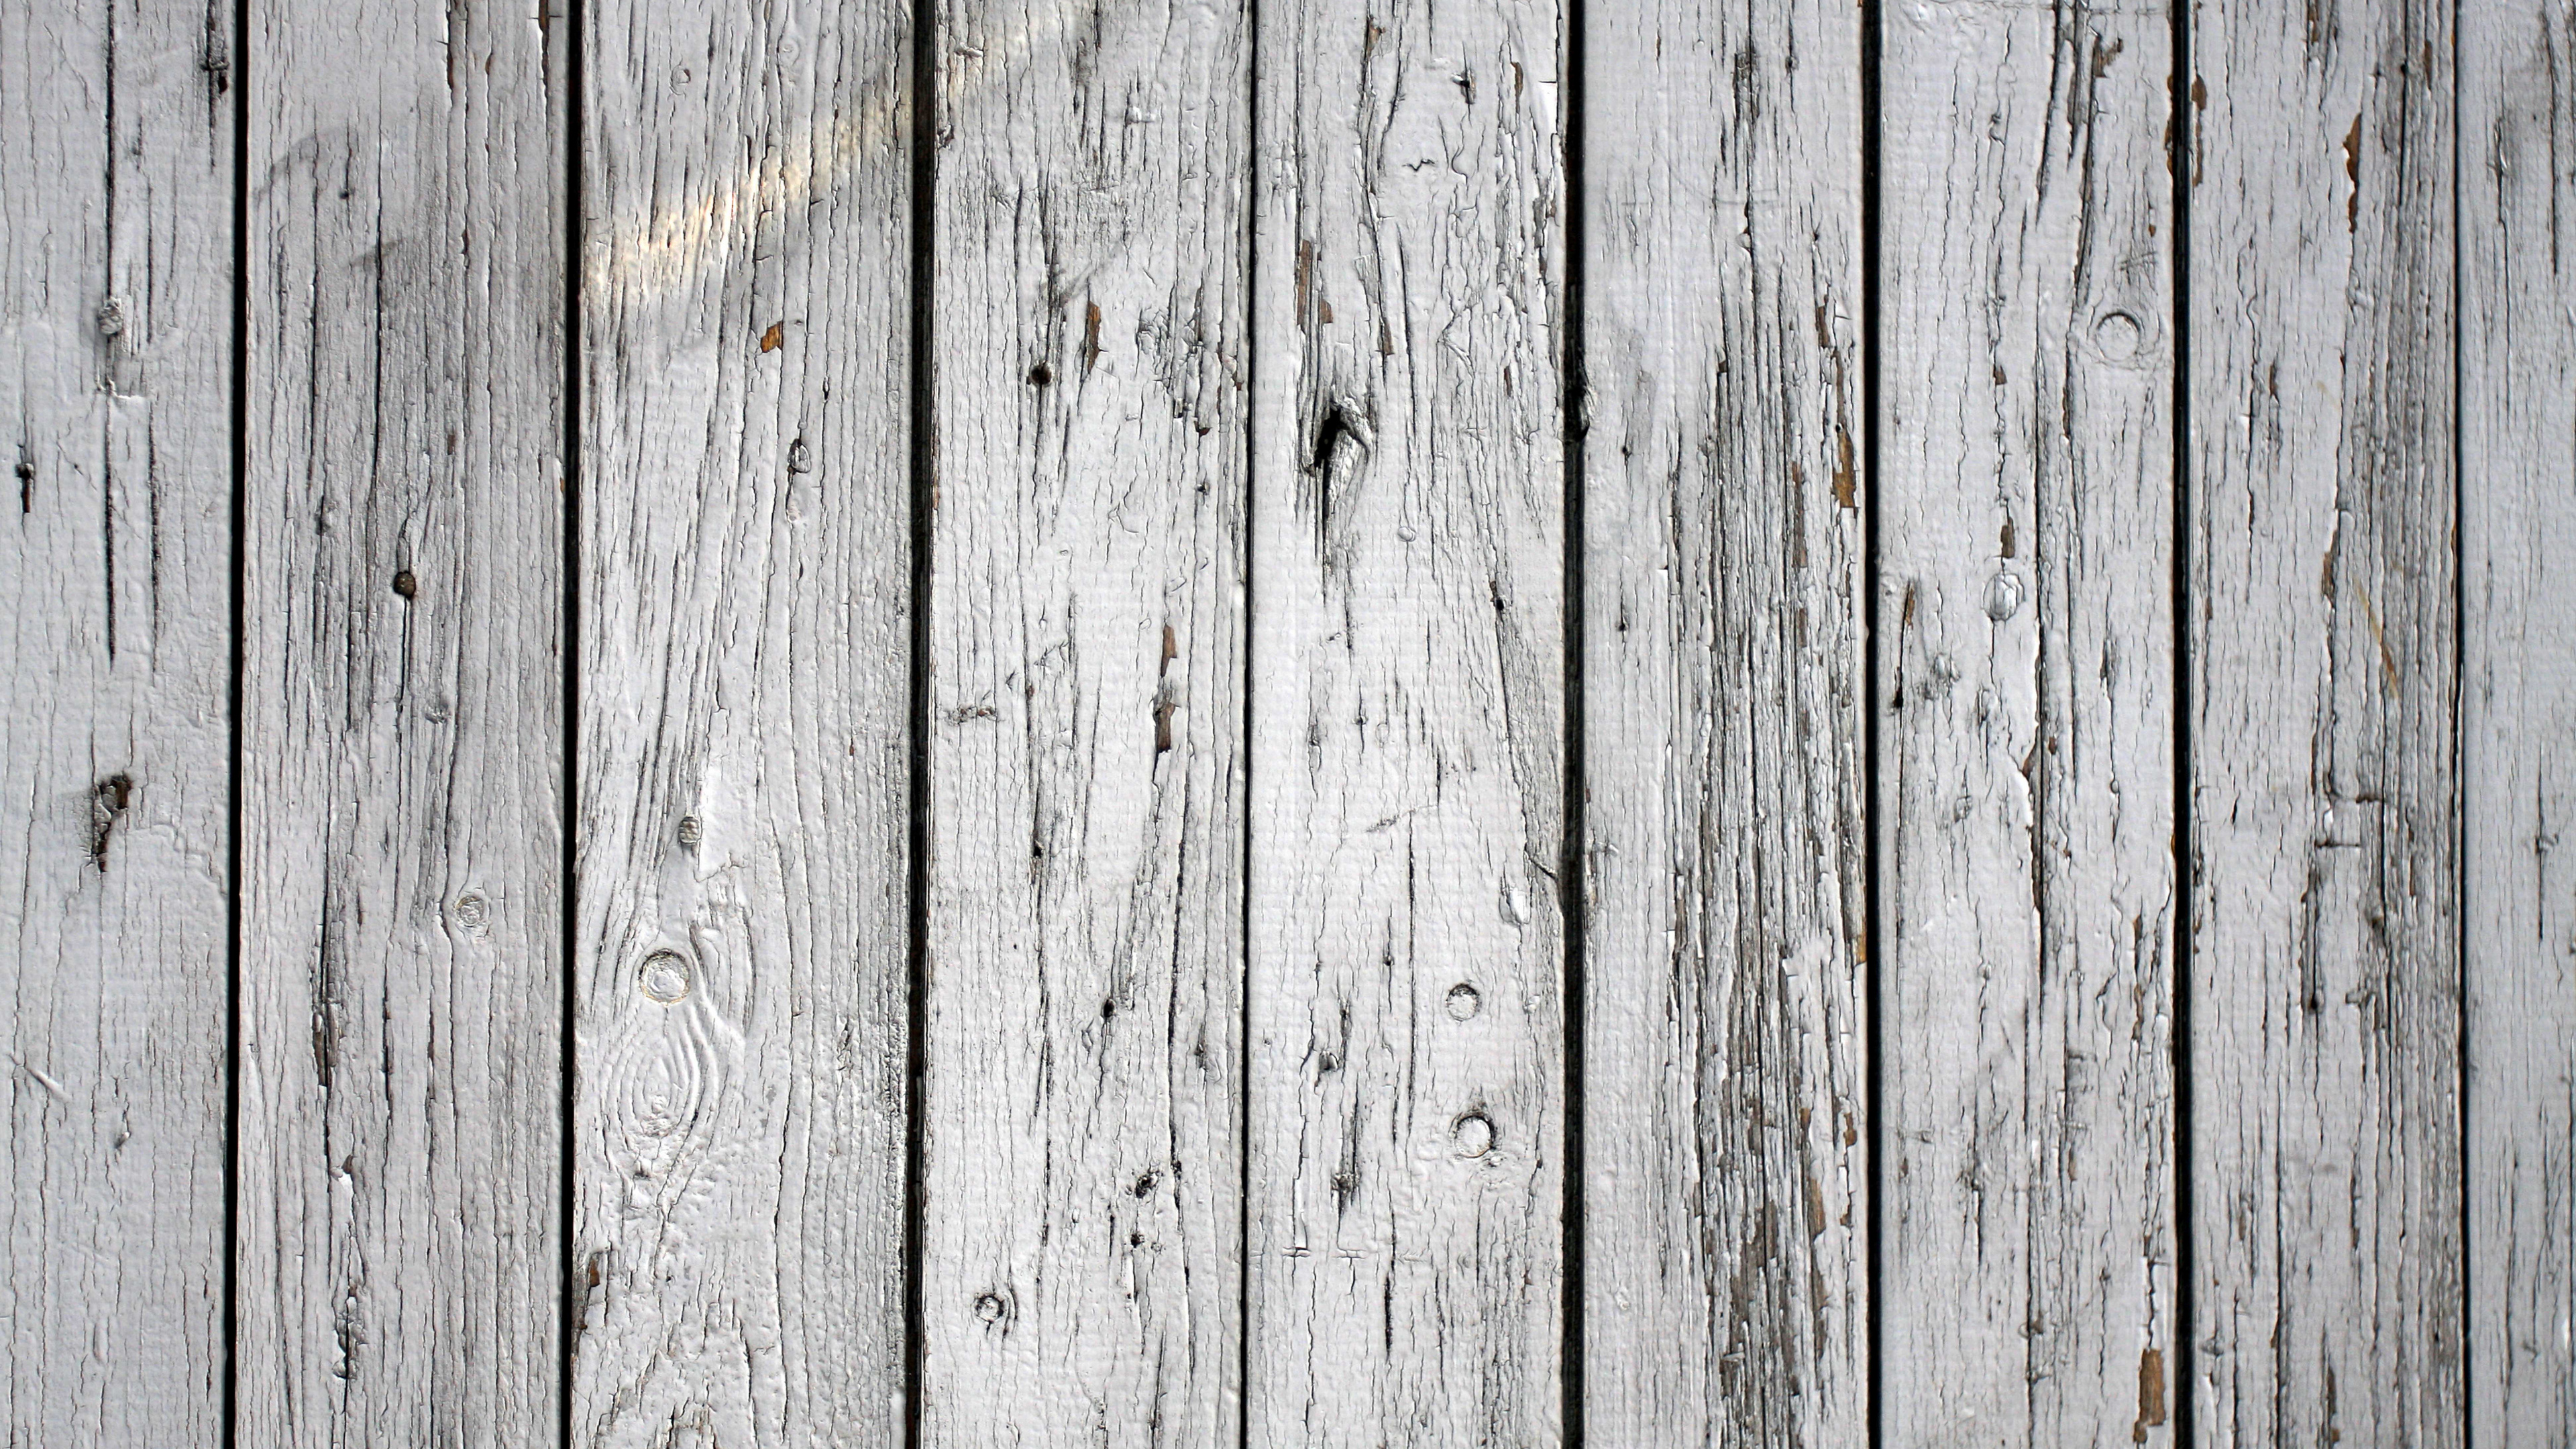 木, 木板, 木染色, 木材, 纹理 壁纸 3840x2160 允许